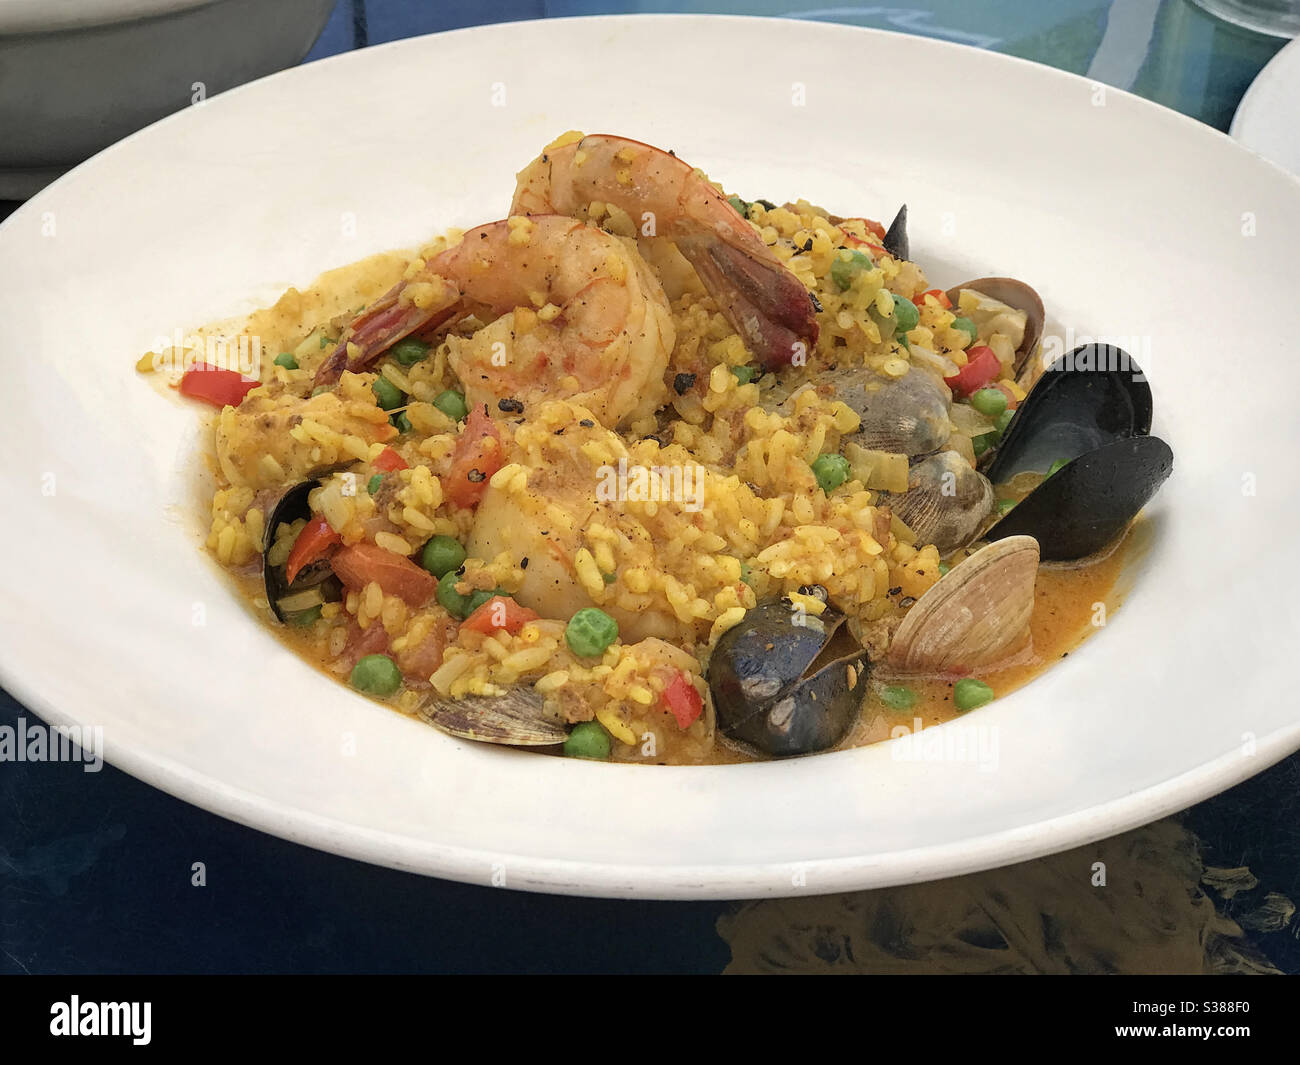 Un plat de paella, composé de crevettes, de moules, de palourdes, de pétoncles et de riz au safran dans un bouillon de fruits de mer, est présenté dans un restaurant avec vue rapprochée. Banque D'Images